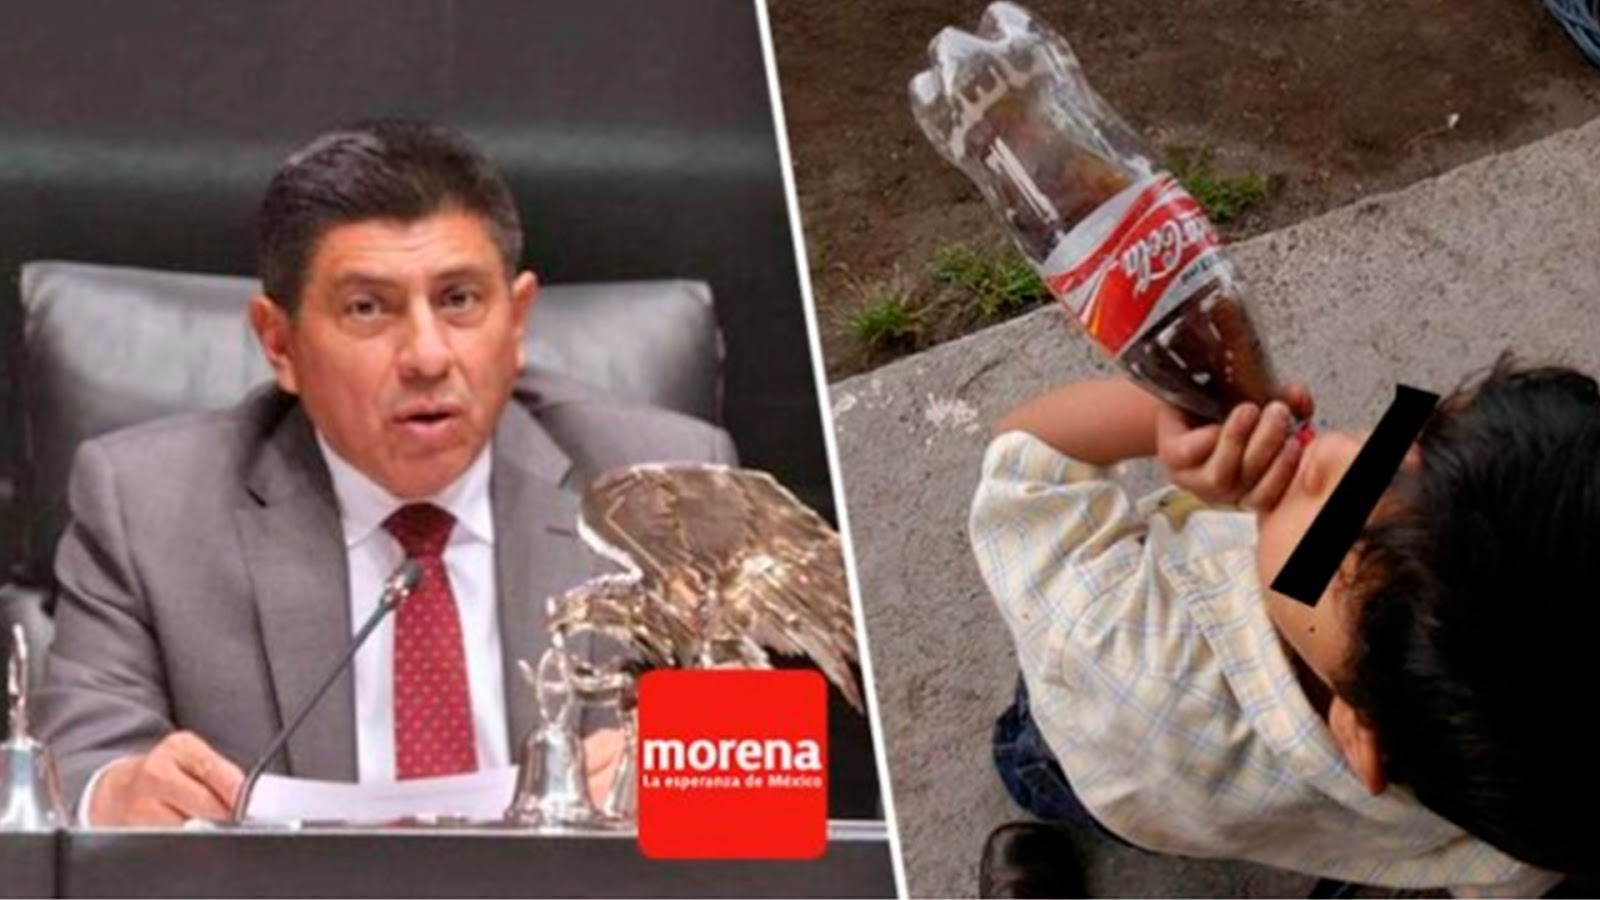 Ahora en todo el país, Morena presenta iniciativa para prohibir ‘Comida chatarra’ a menores de edad.